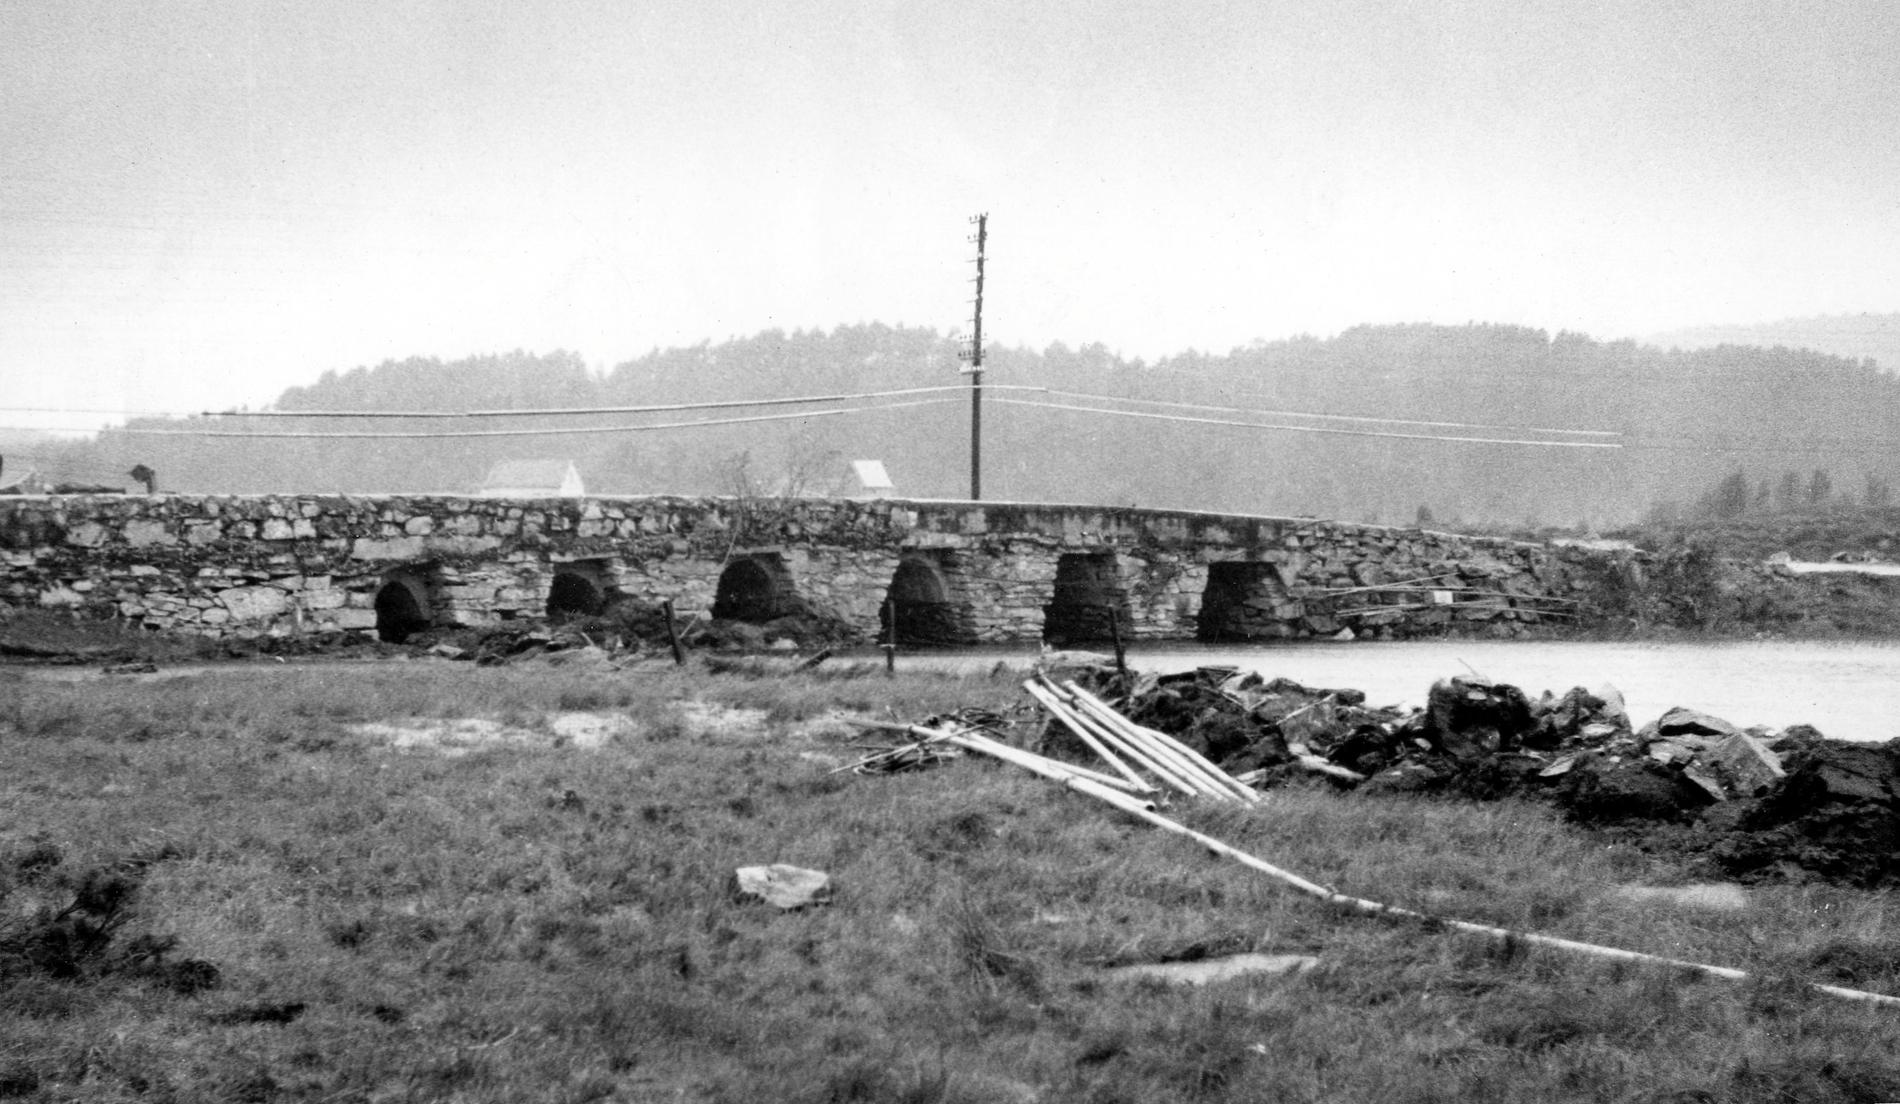 HÅBROEN: Dette bildet er trolig tatt i 1957 og viser Håbroen eller Rollands bro. Håbroen var en såkalt platebro, med store steinheller eller plater liggende over brokarene. Håbroen sto ferdig i 1808 og var bygget av Mons Hansen Vesterli. Den lå omtrent der Litleåsvegen begynner, men ble sprengt bort i 1960 i forbindelse med kanaliseringen av åsamyrane. 